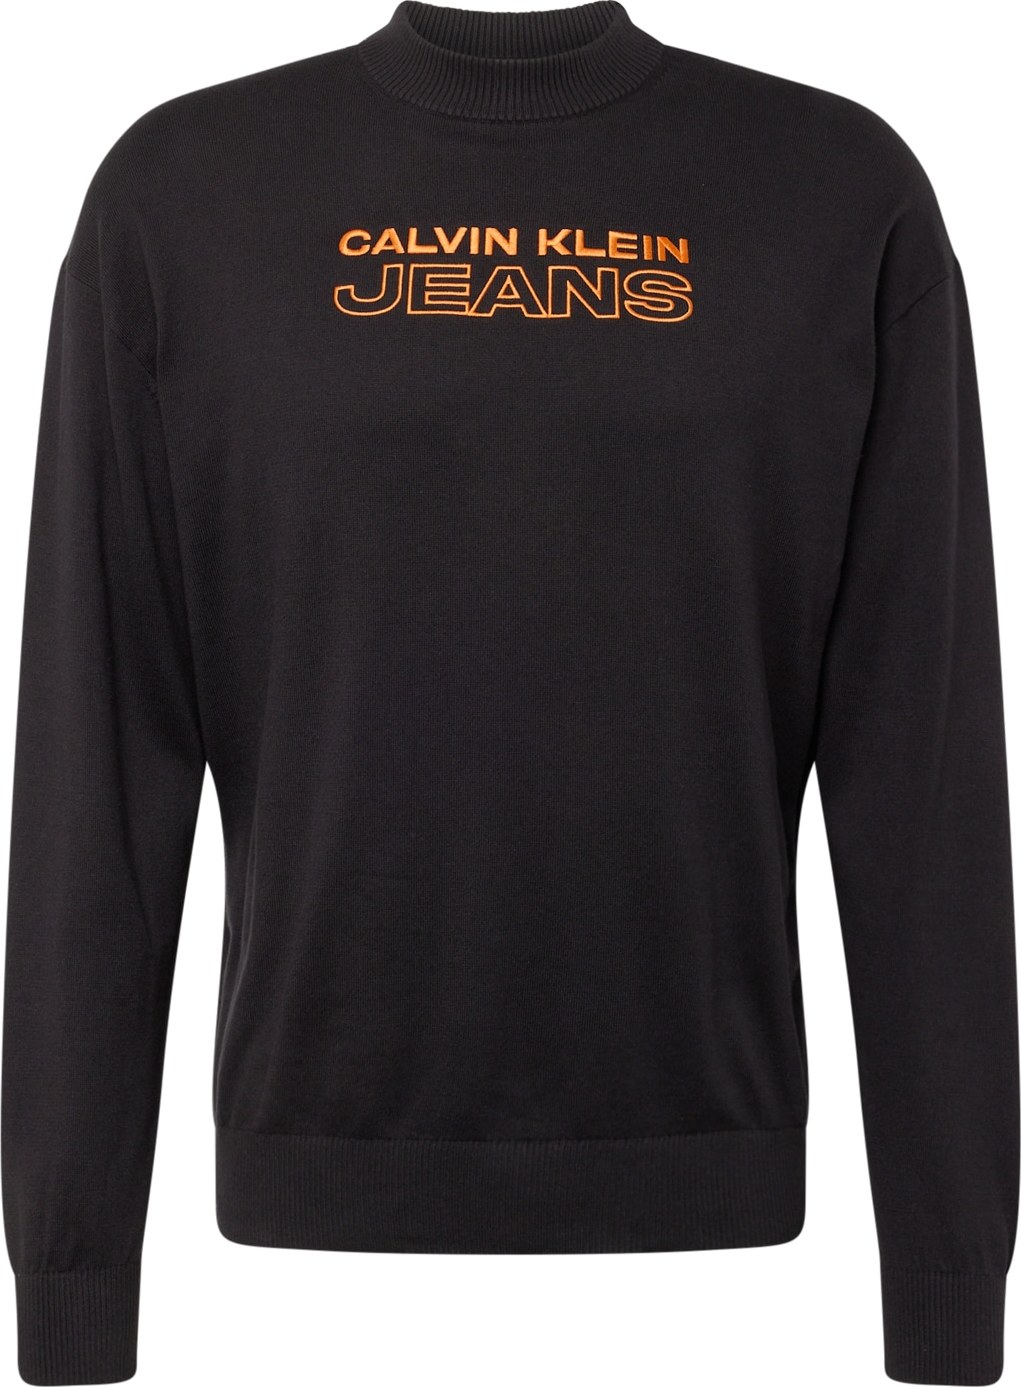 Svetr Calvin Klein Jeans oranžová / černá